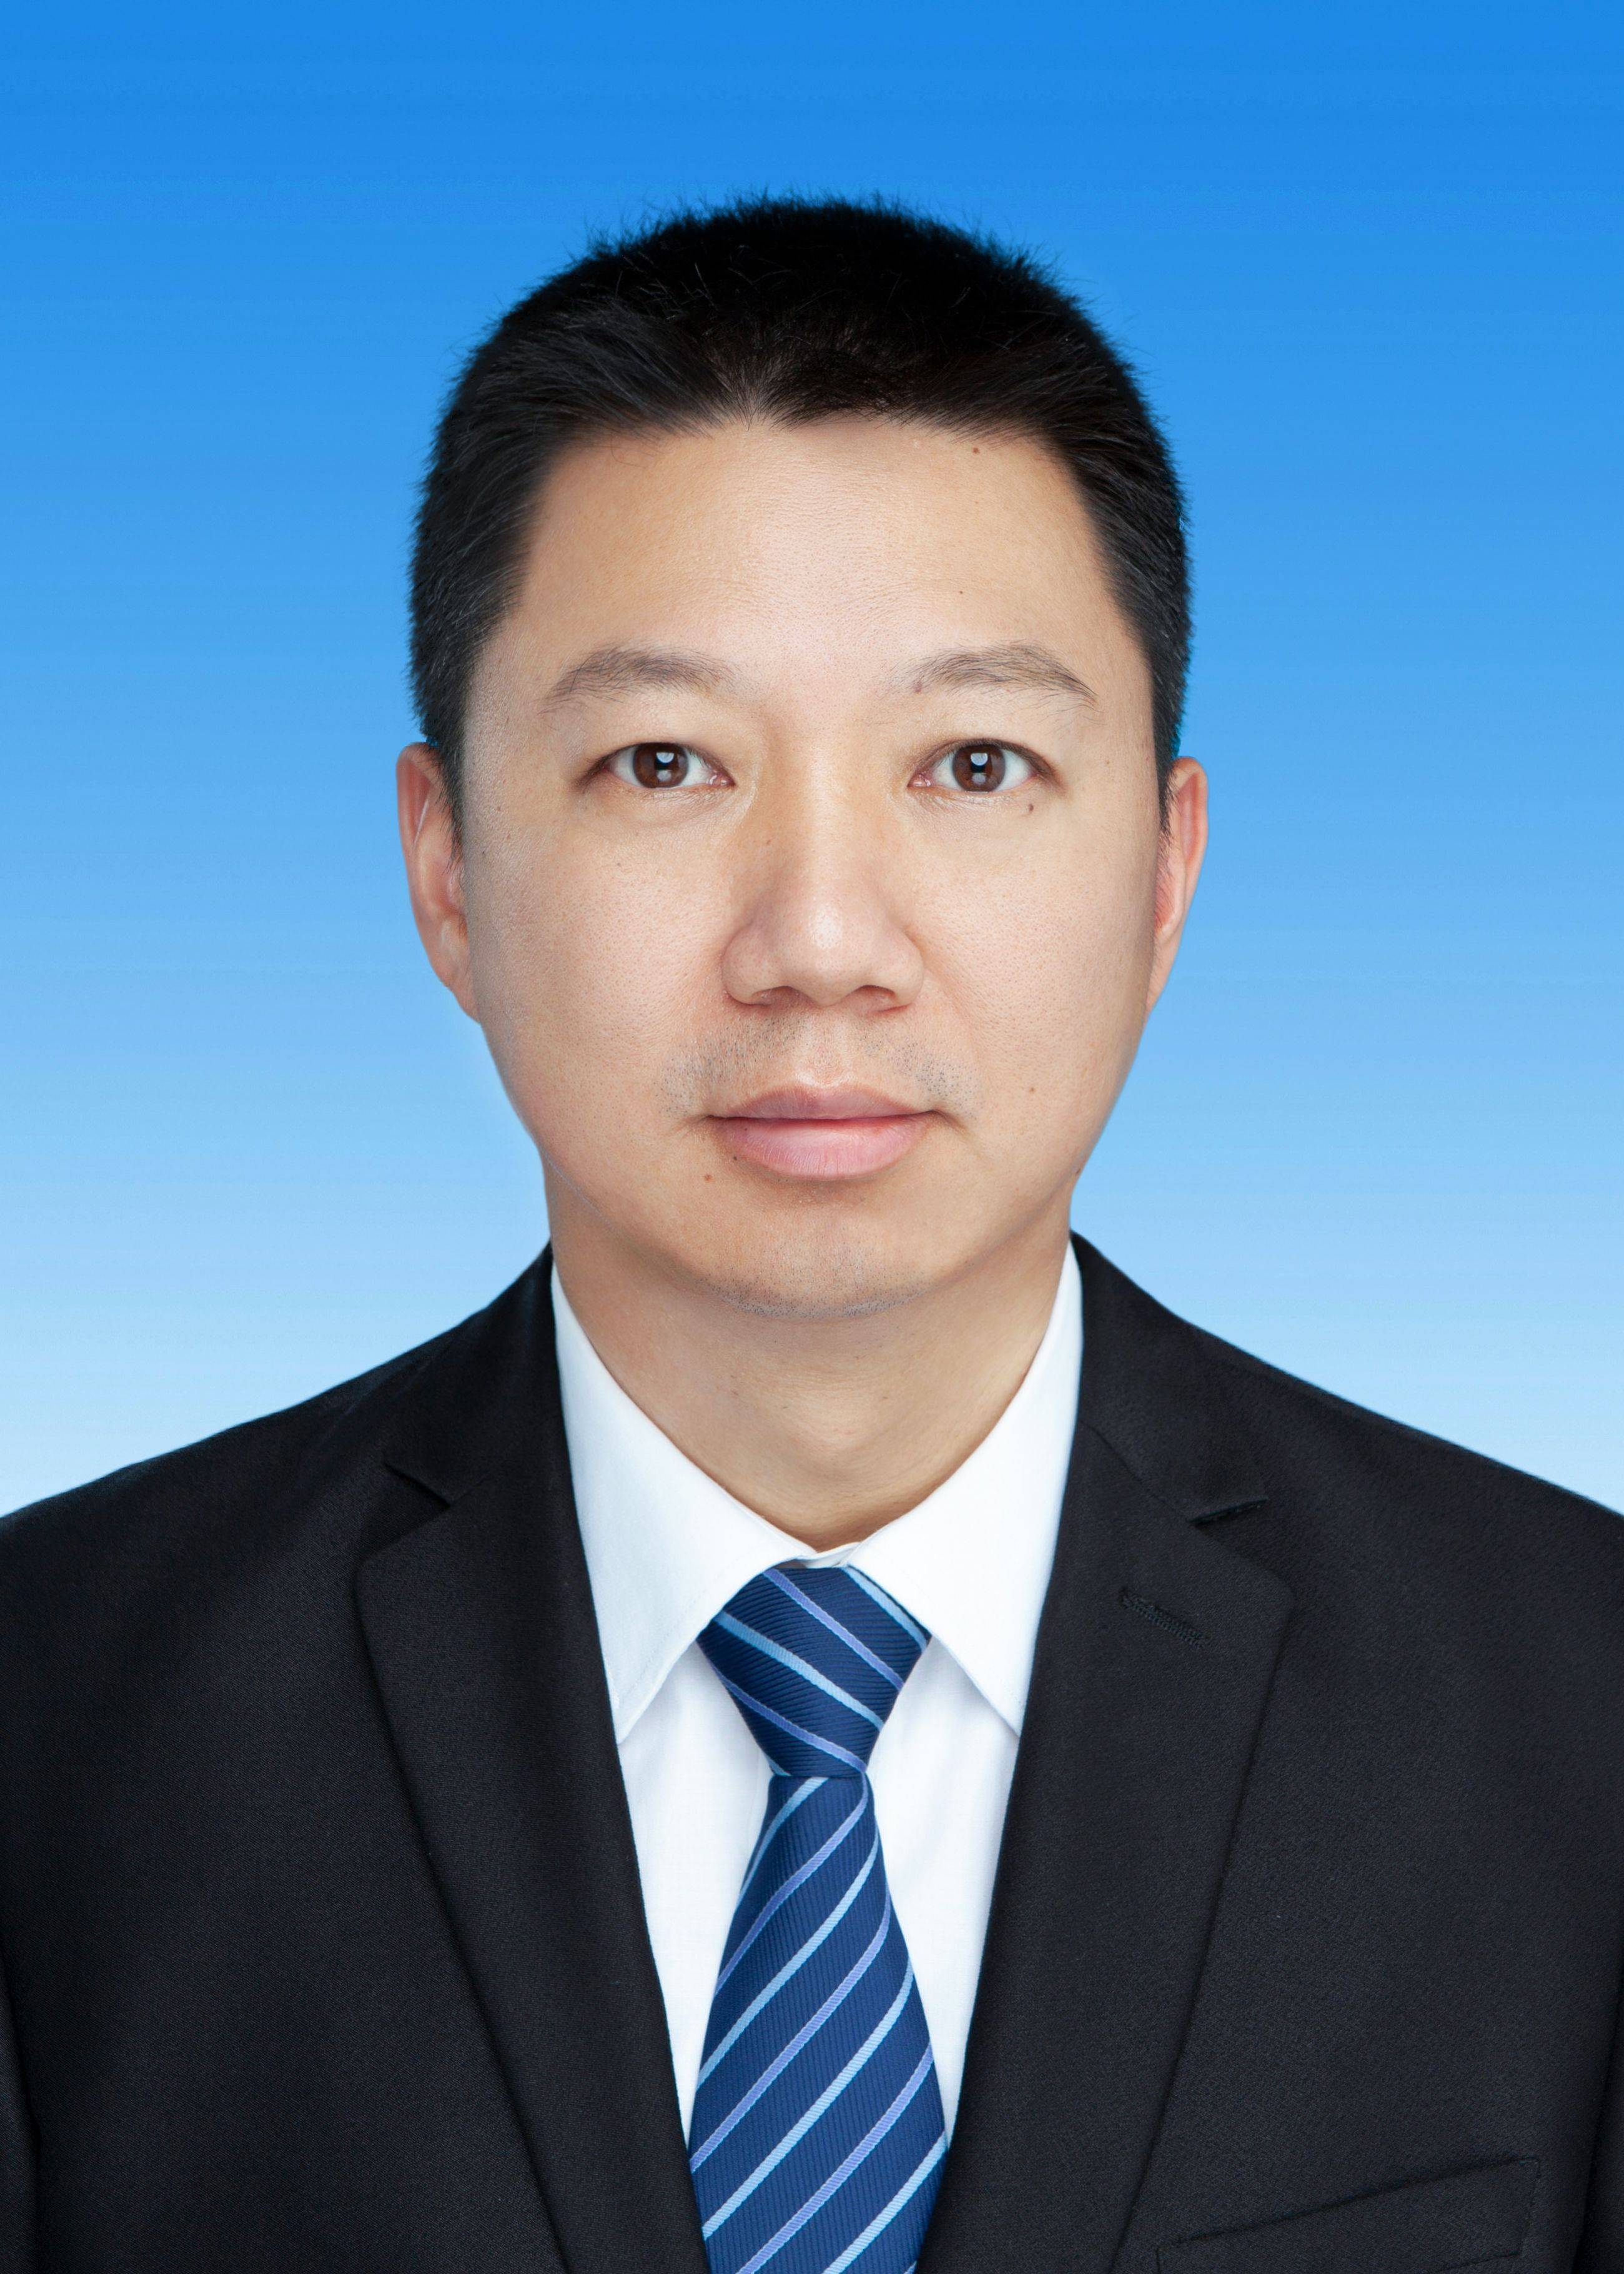 溧阳市副市长张涛,被免职,由纪检监察机关立案审查